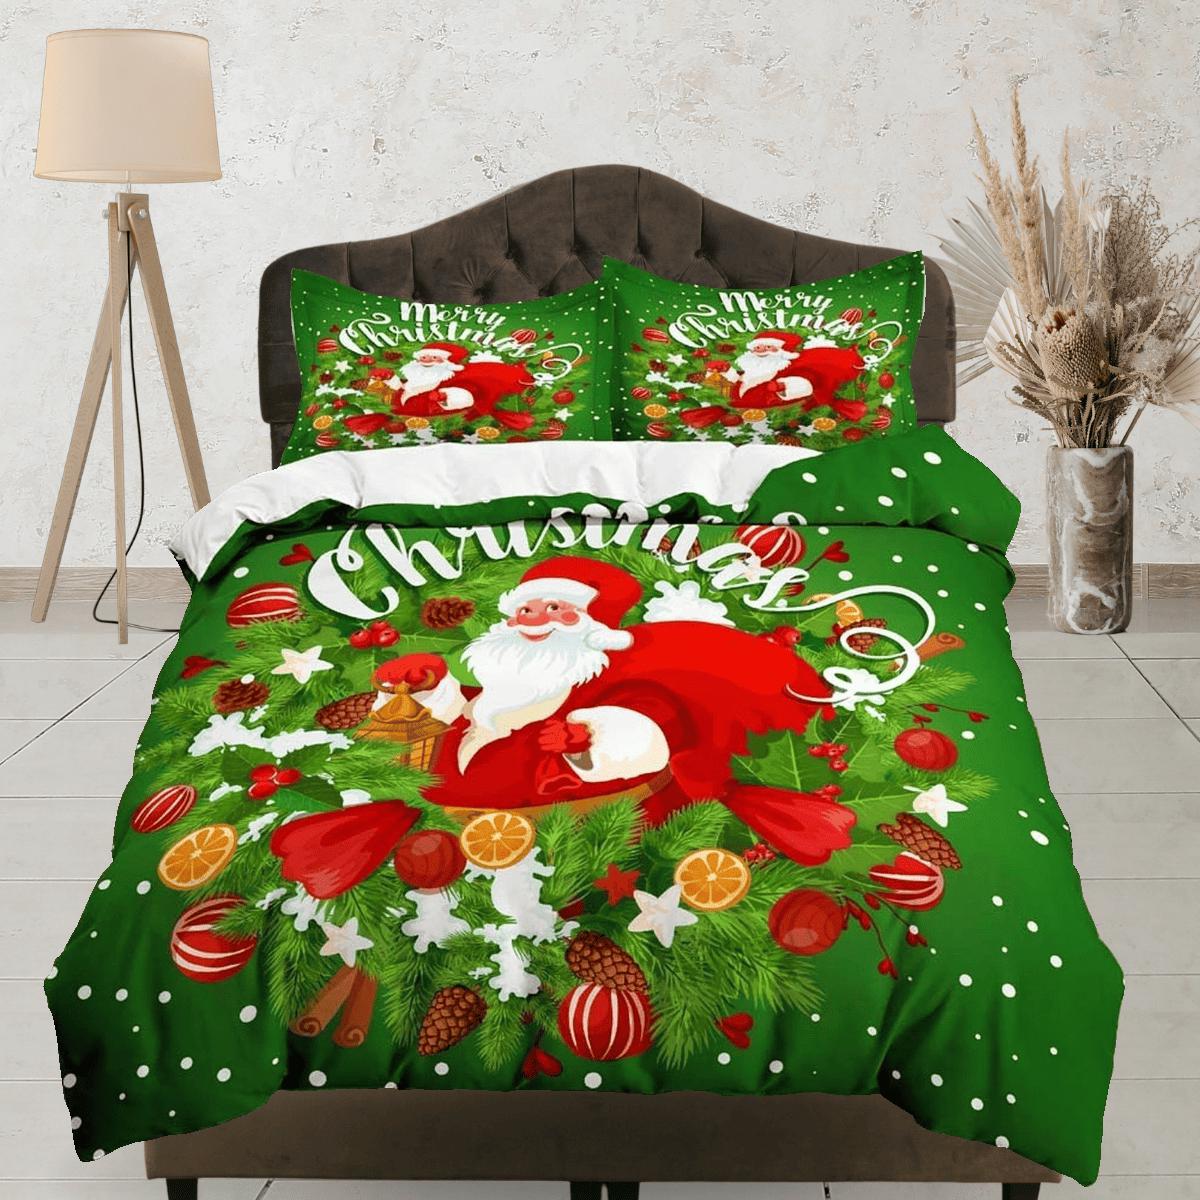 daintyduvet Santa Claus Christmas wreath green bedding & pillowcase holiday gift duvet cover king queen toddler bedding baby Christmas farmhouse decor